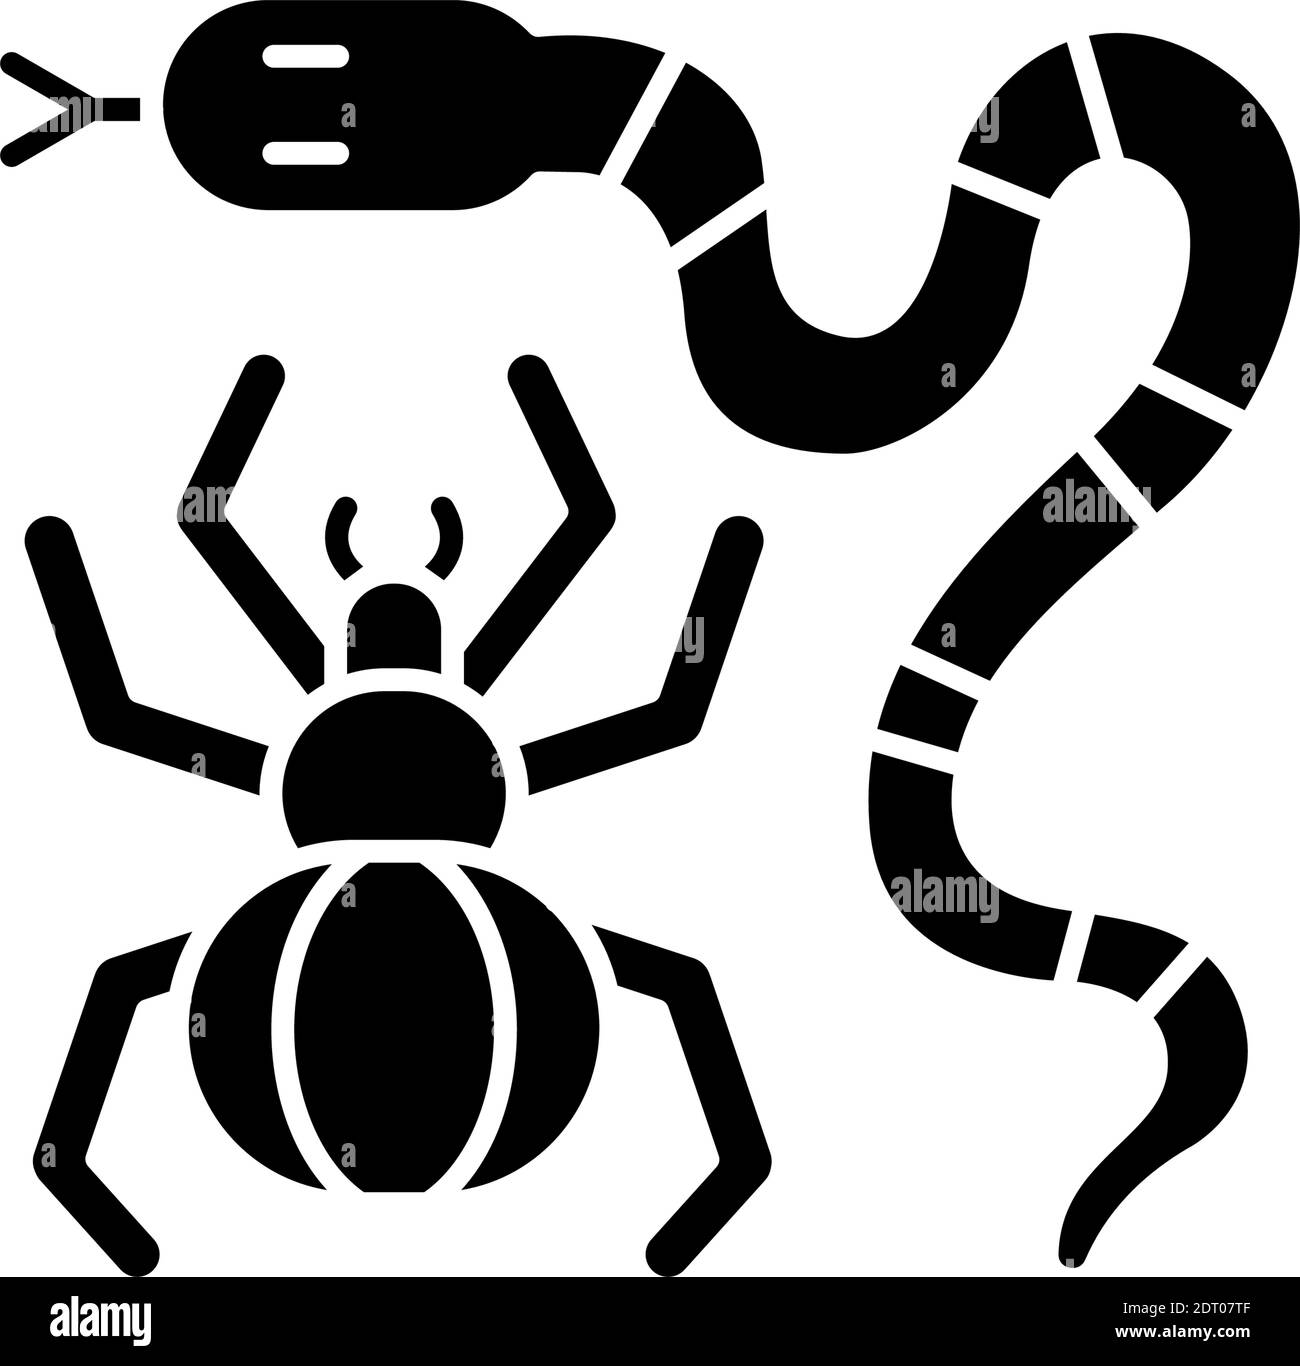 Dangerous animals black glyph icon Stock Vector